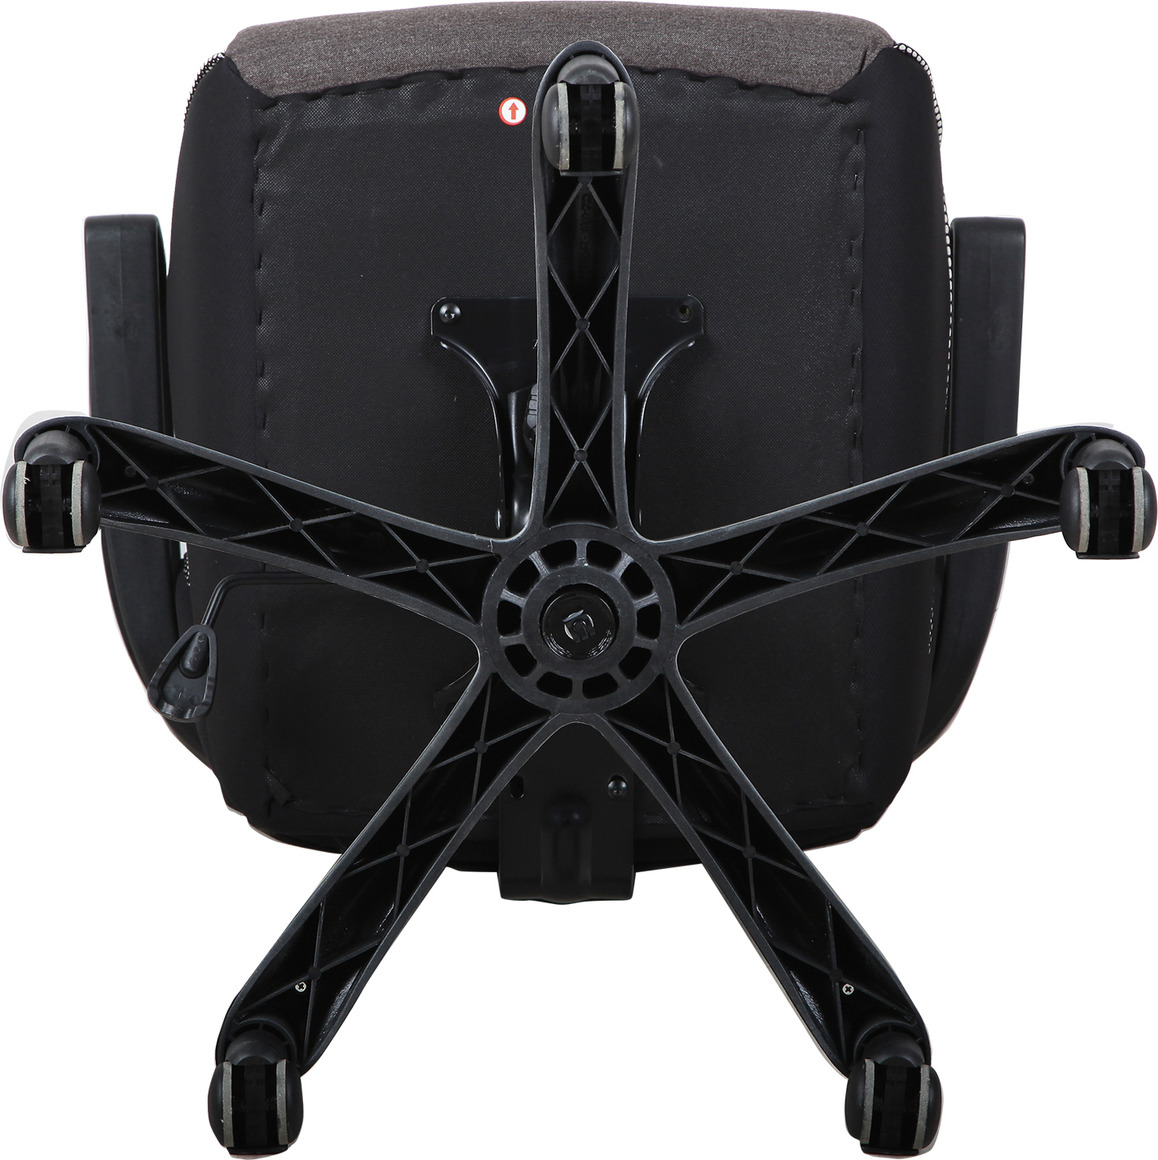 фото Компьютерное кресло Brabix Techno GM-002, 531815, черный, серый, белый